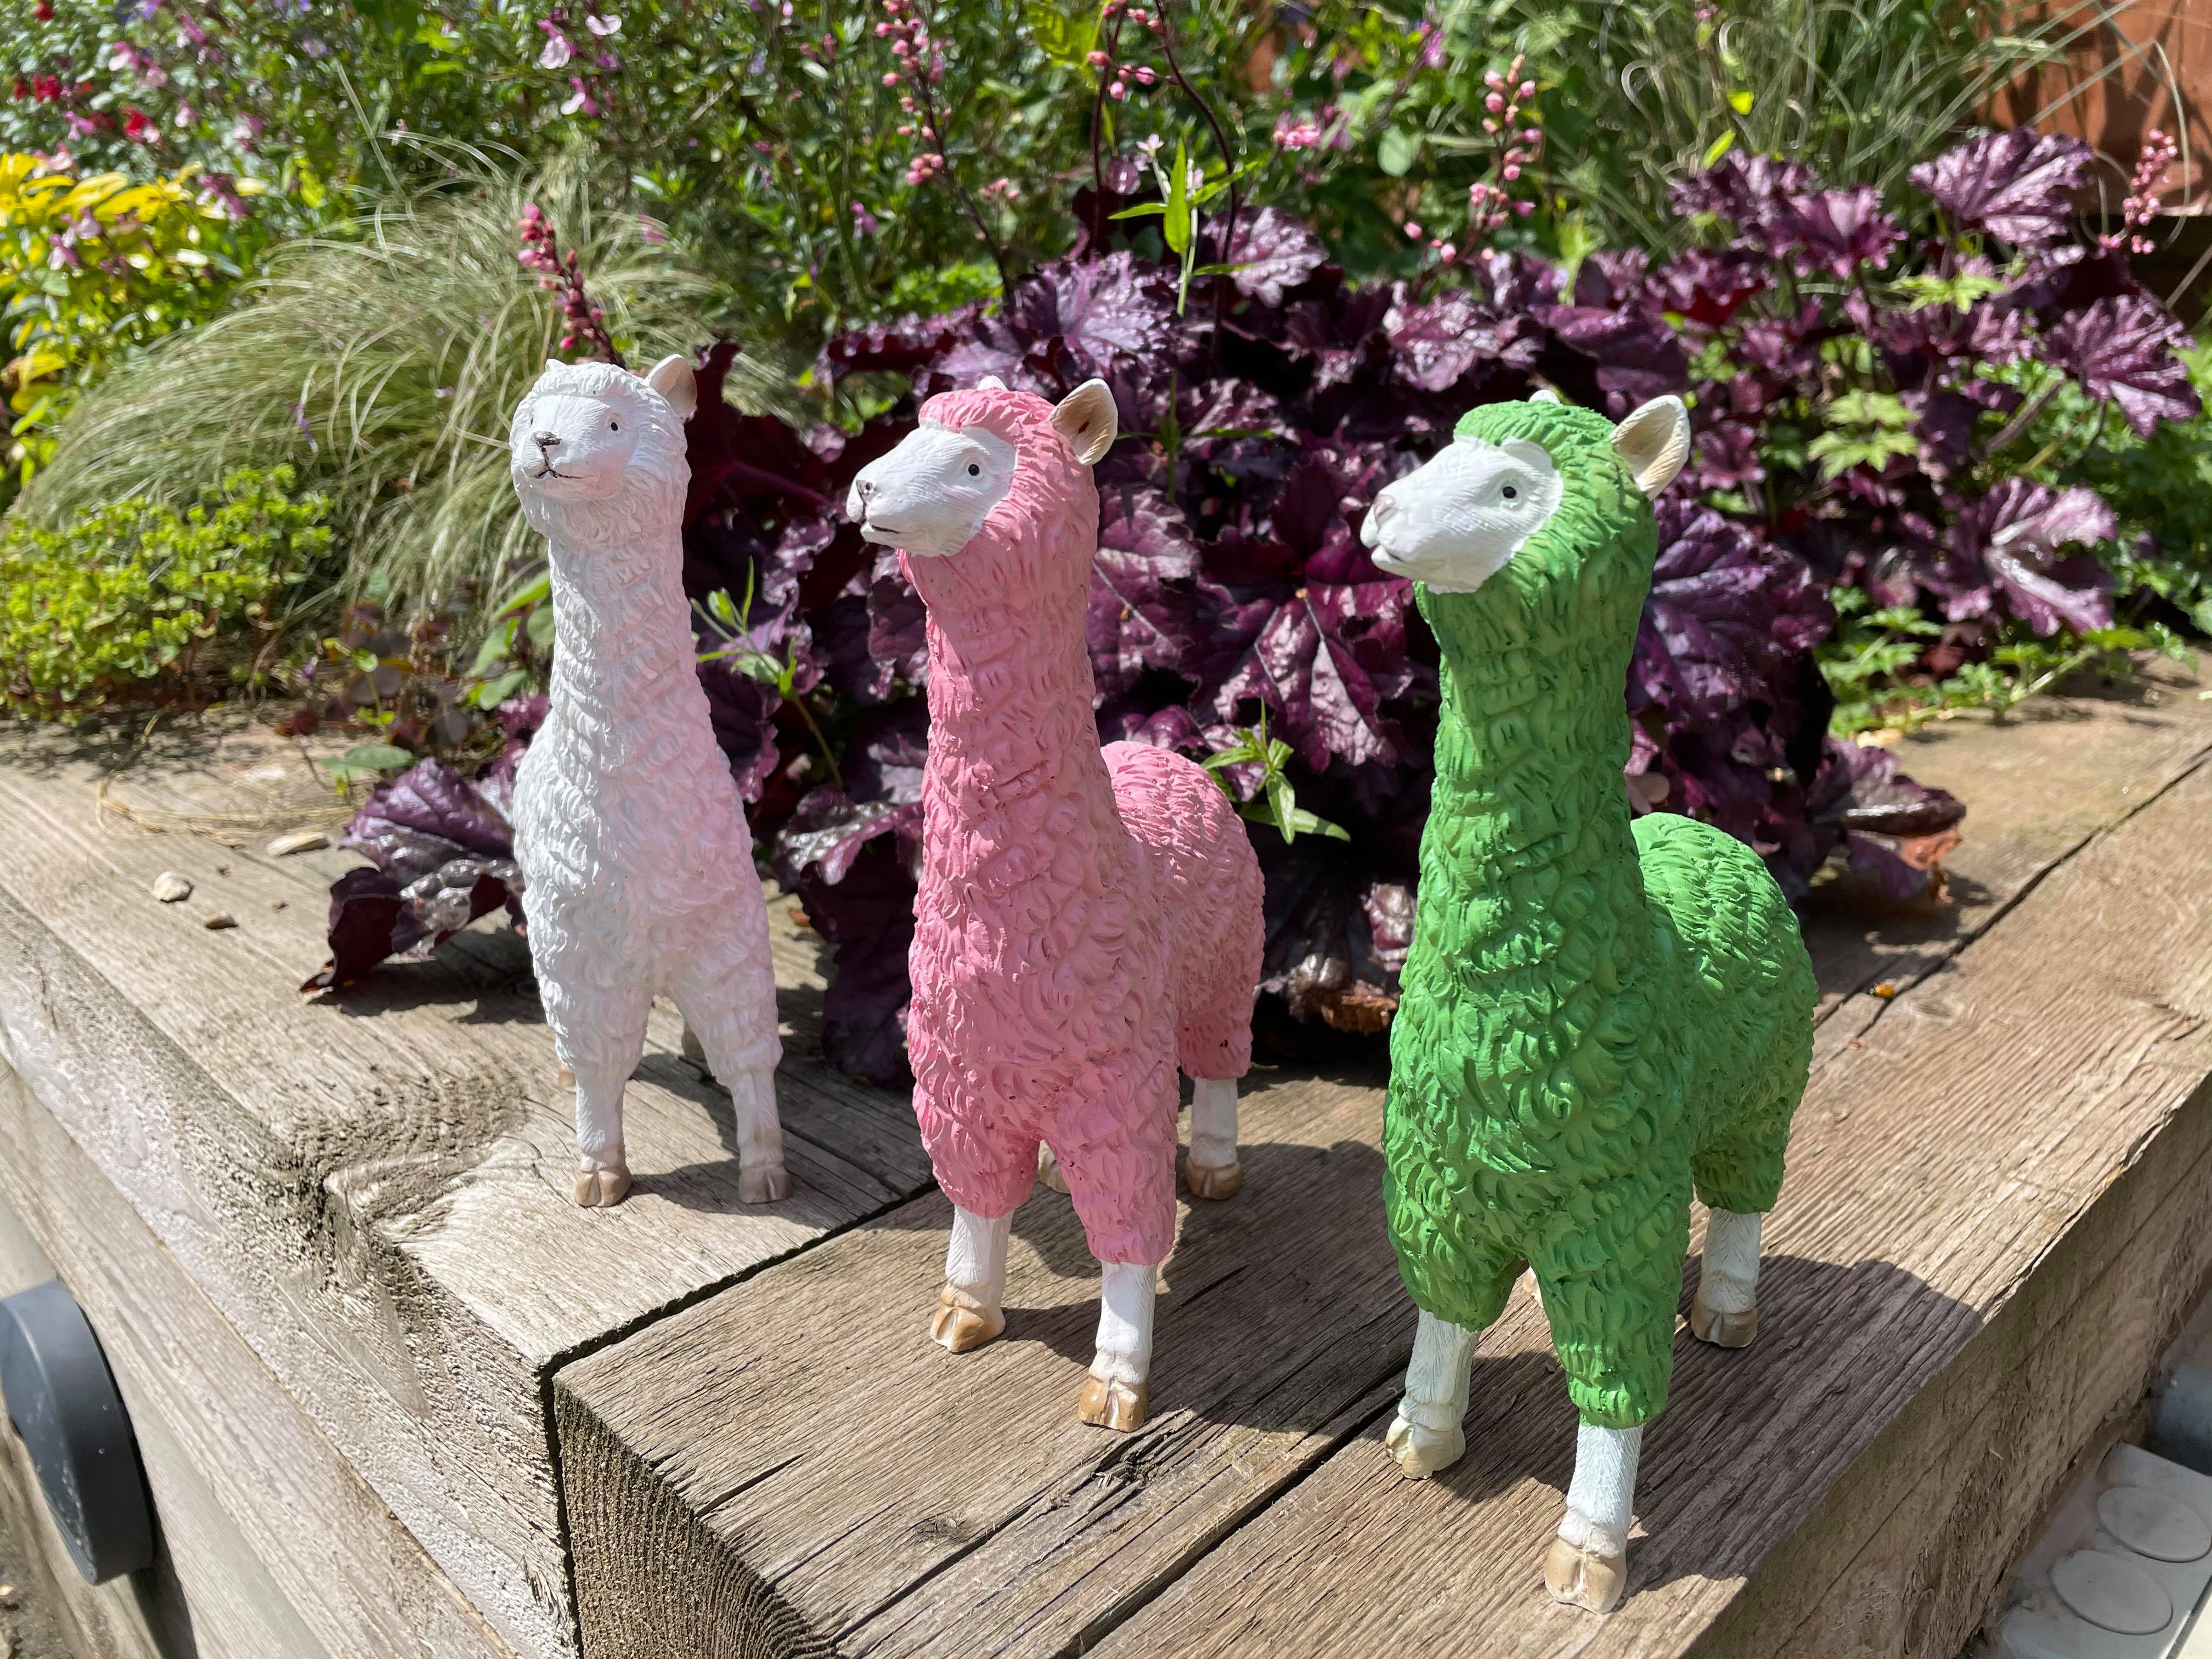 Three Funky Llamas